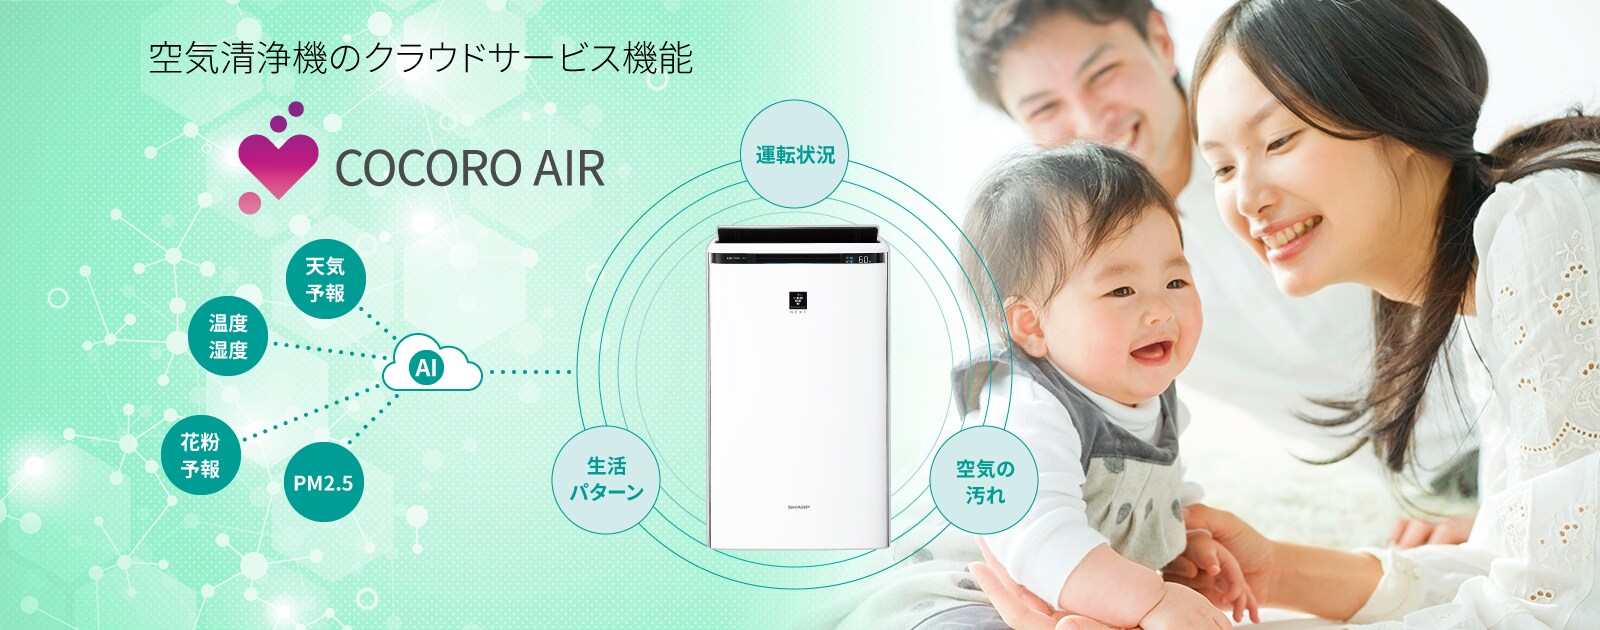 【AIoT】空気清浄機